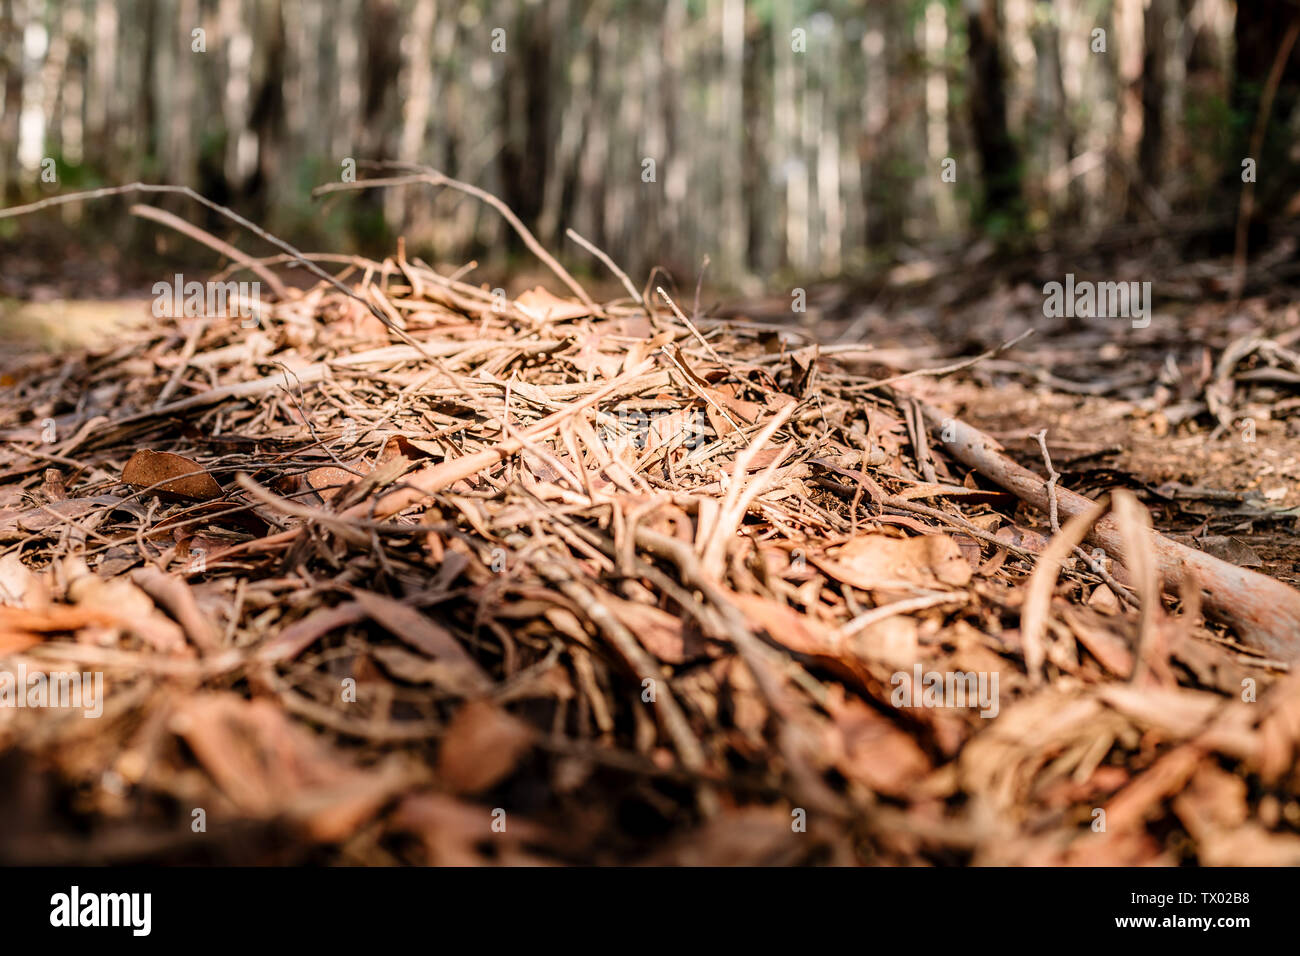 Immagine di terra di caduto stick e ramoscelli, con luci e ombre in un  bosco con alberi lontani Foto stock - Alamy